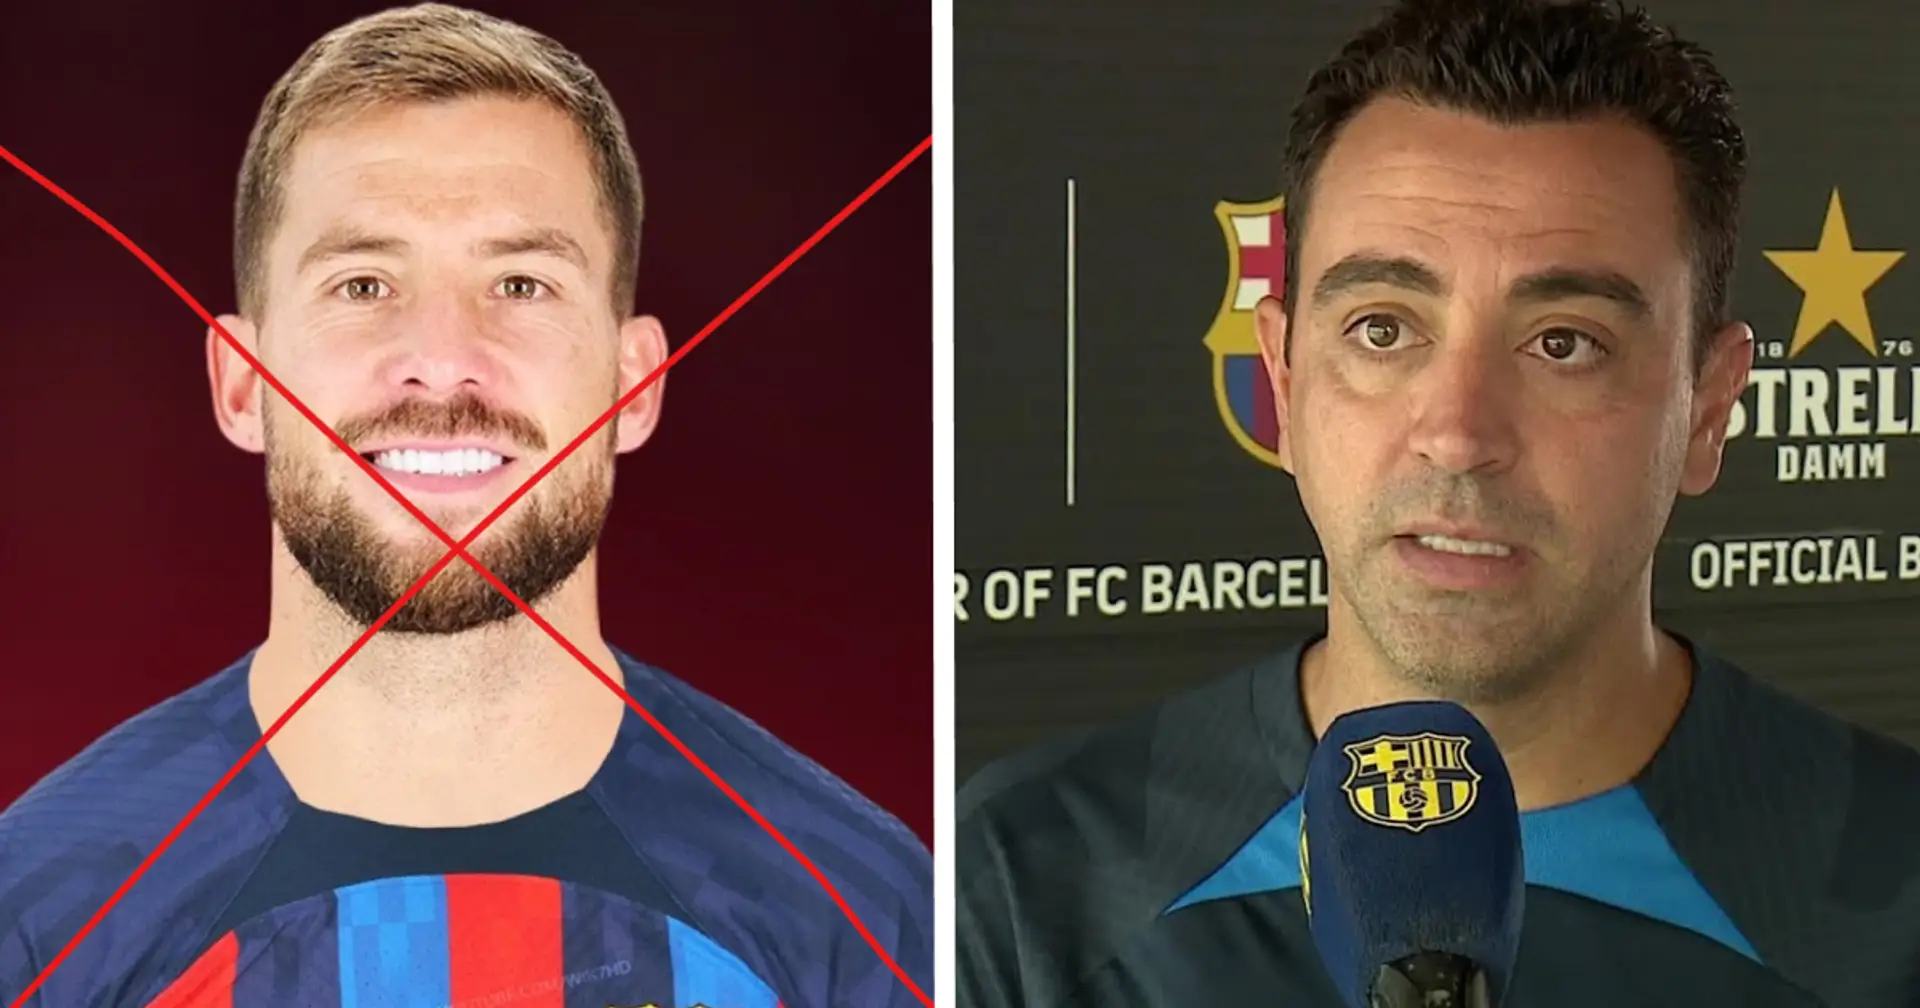 Olvídate de Íñigo Martínez: el Barça 'elige' al reemplazo de Piqué de La Masia - Xavi confía en él